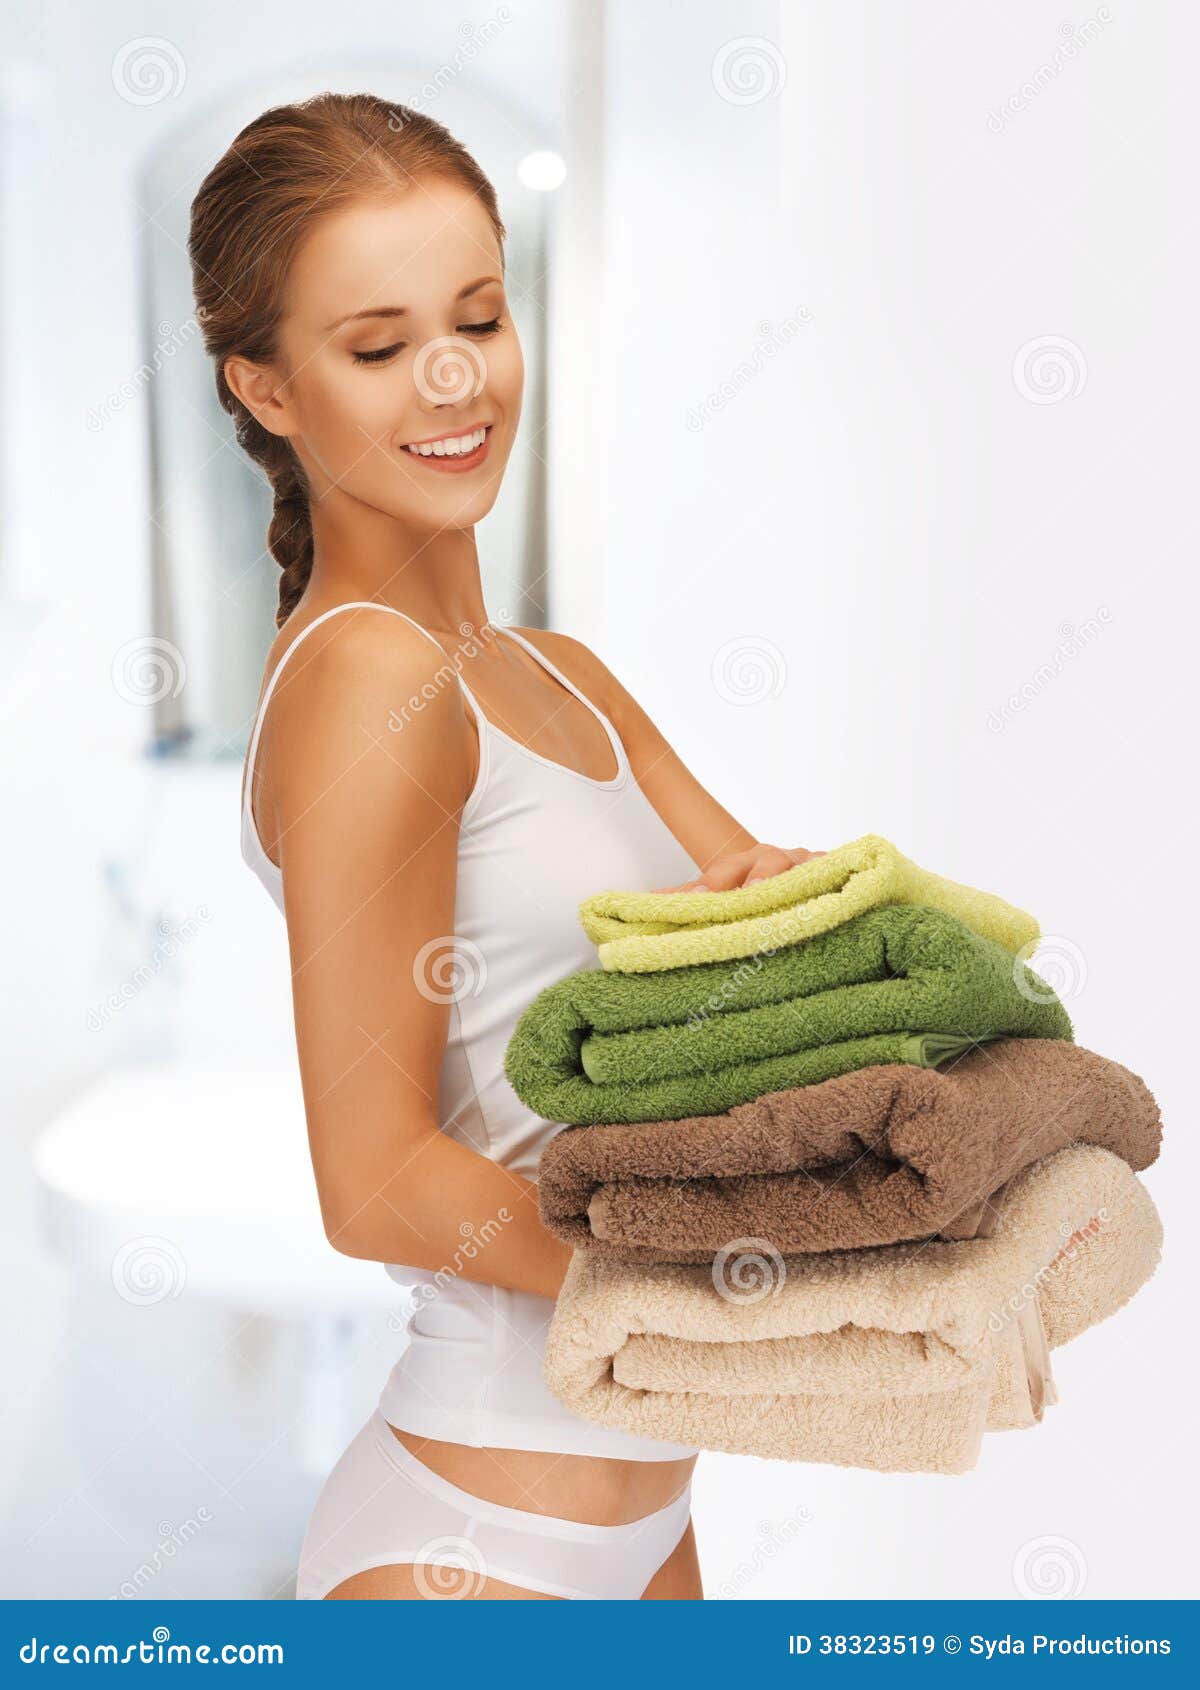 Работа в полотенце. Девушка в полотенце. Девушка с полотенцем в руках. Девушка держит в руках полотенце. Женщина со стопкой полотенец.